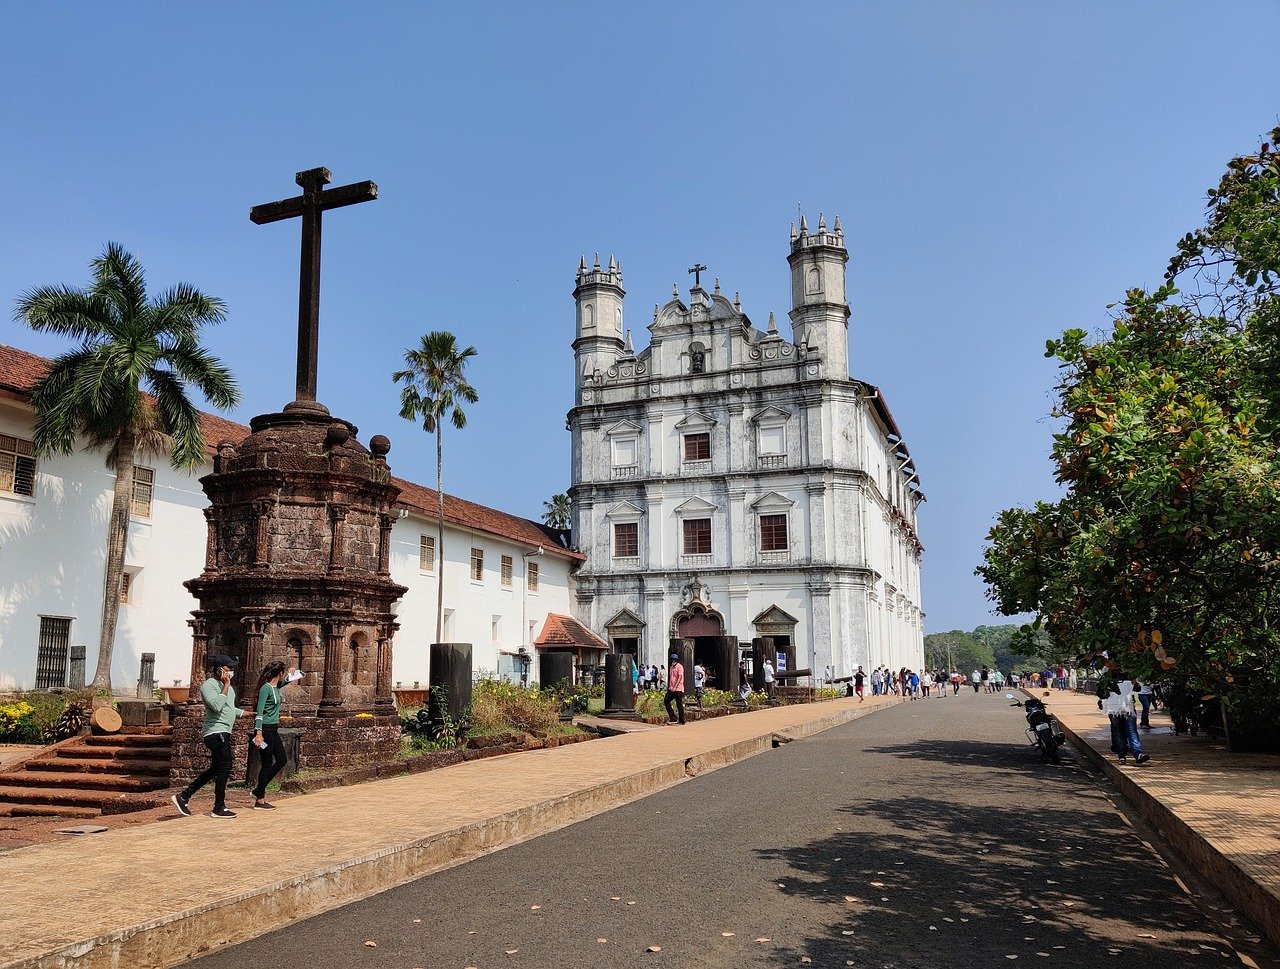 Architecture in Goa